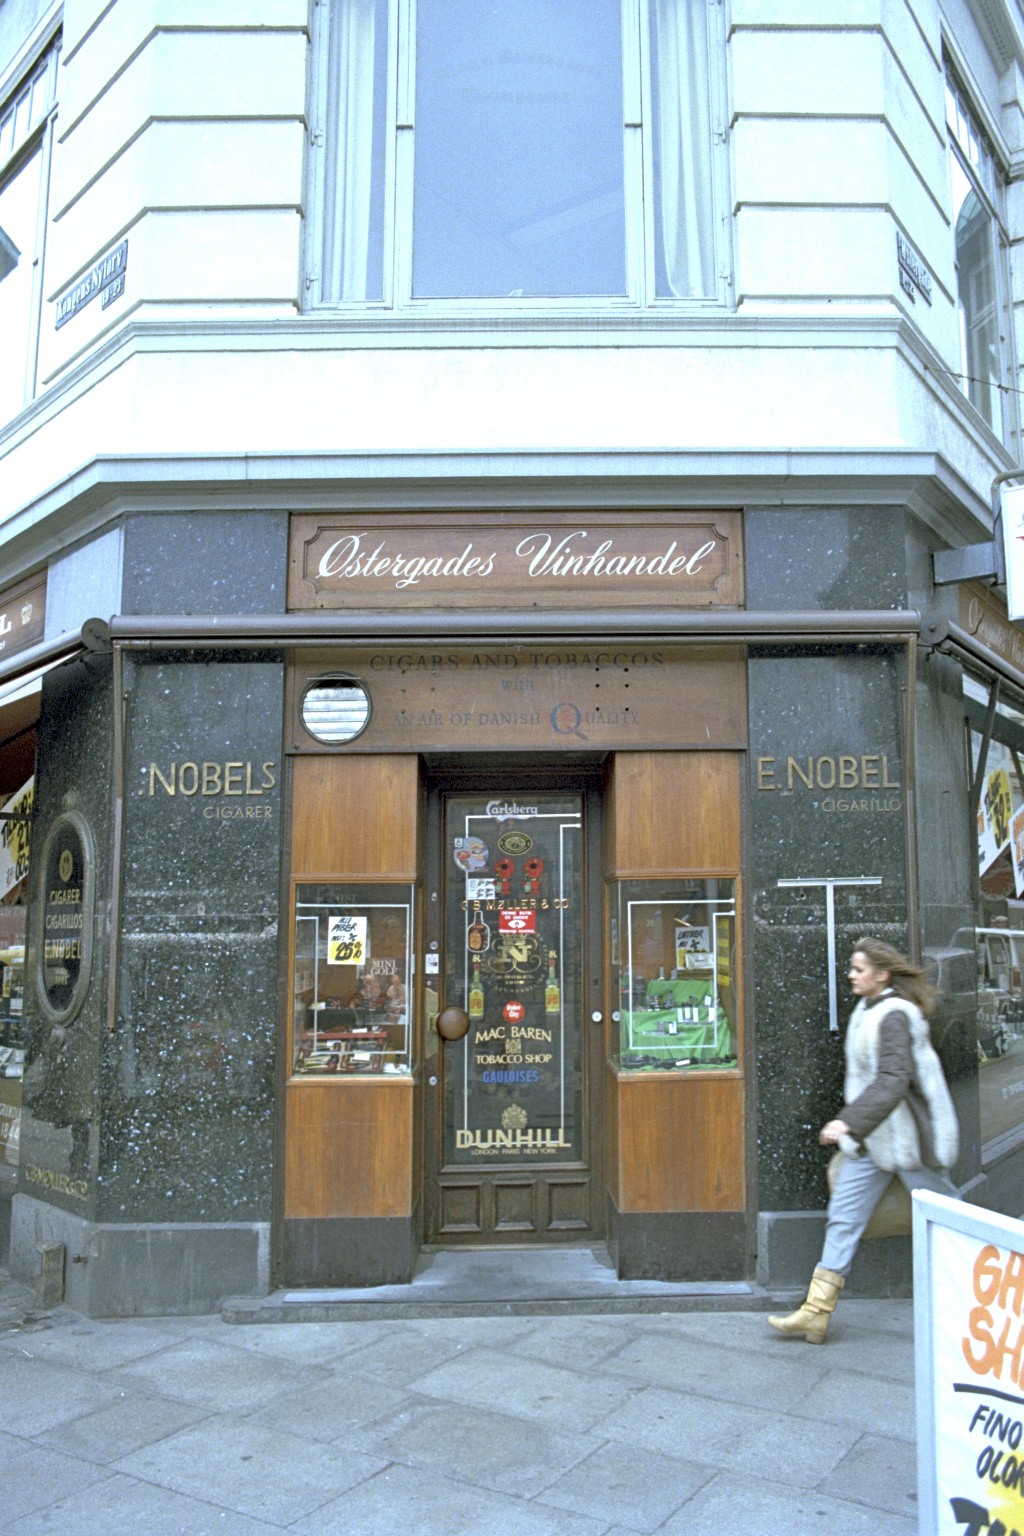 Østergades Vinhandel, København